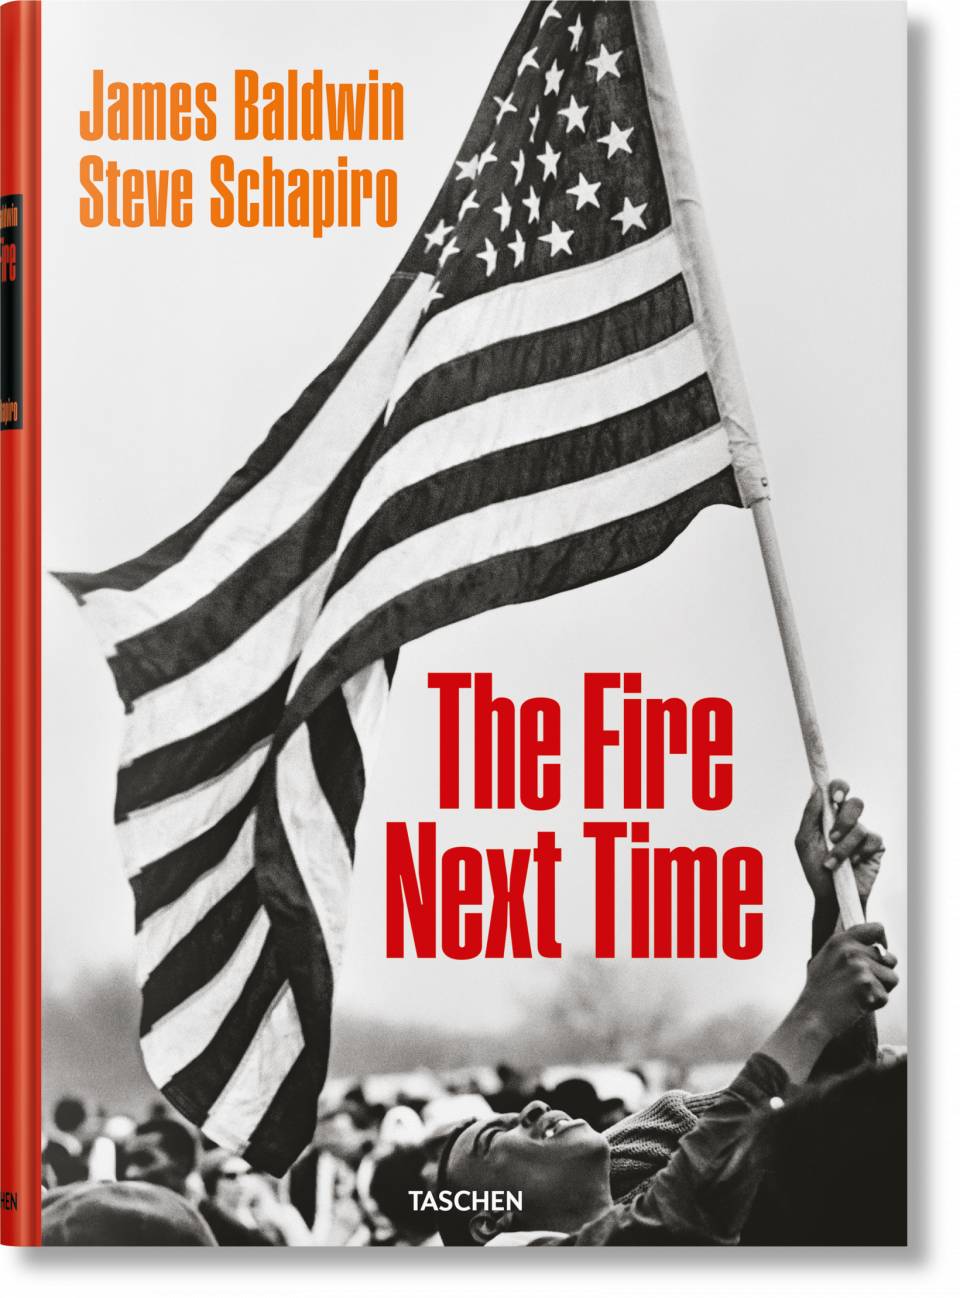 James Baldwin. Steve Schapiro. The Fire Next Time by Taschen